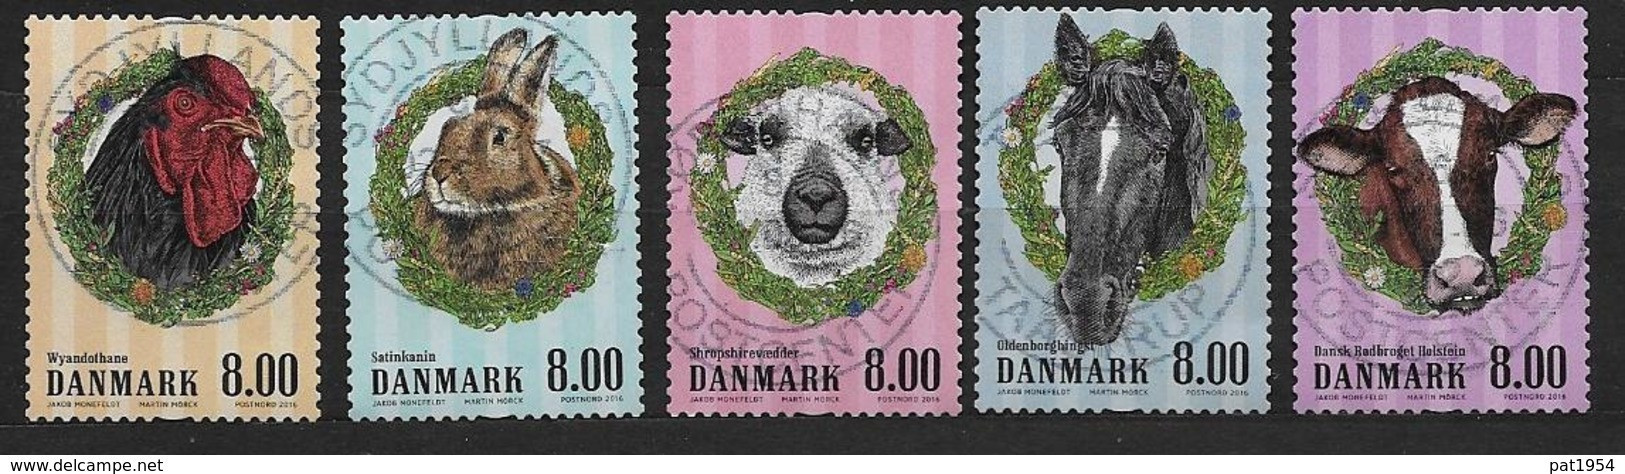 Danemark 2016 N° 1834/1838 Oblitérés Animaux De La Ferme - Used Stamps